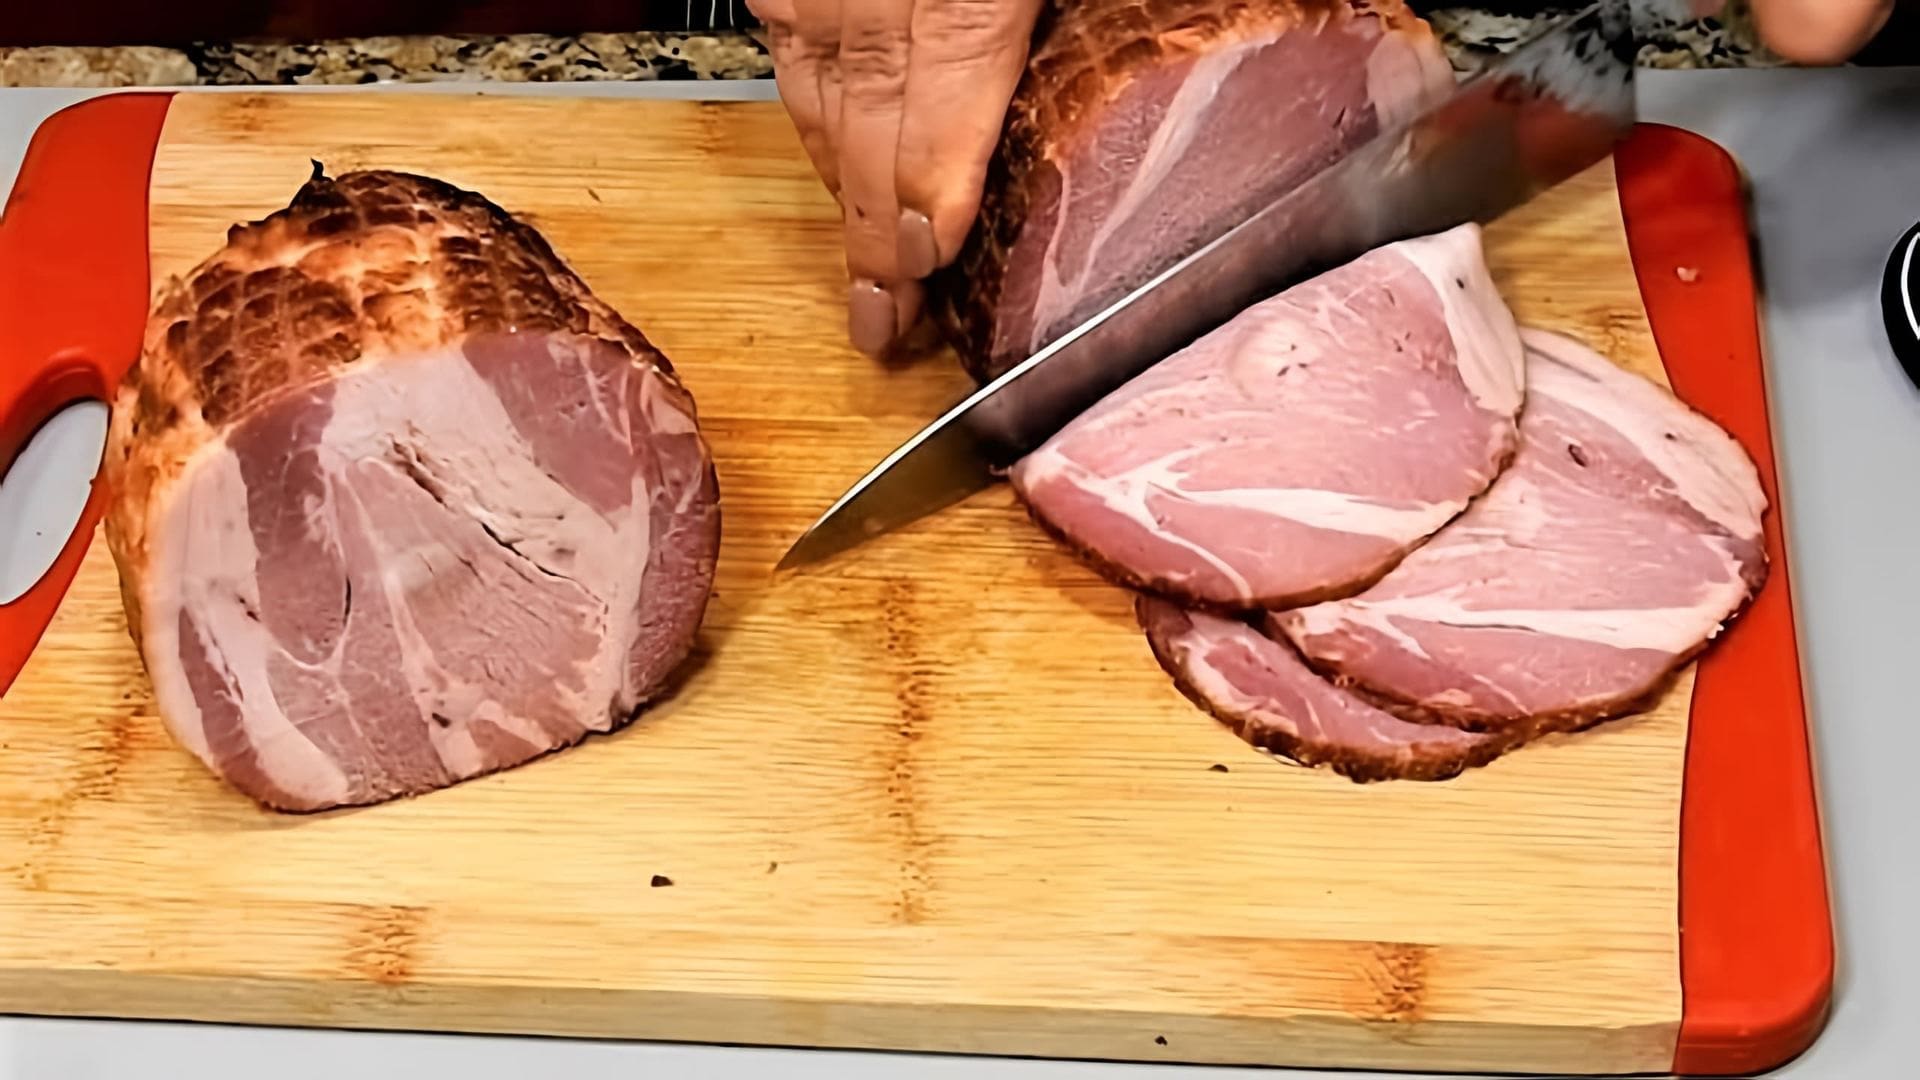 В этом видео демонстрируется процесс приготовления домашнего мяса для бутербродов